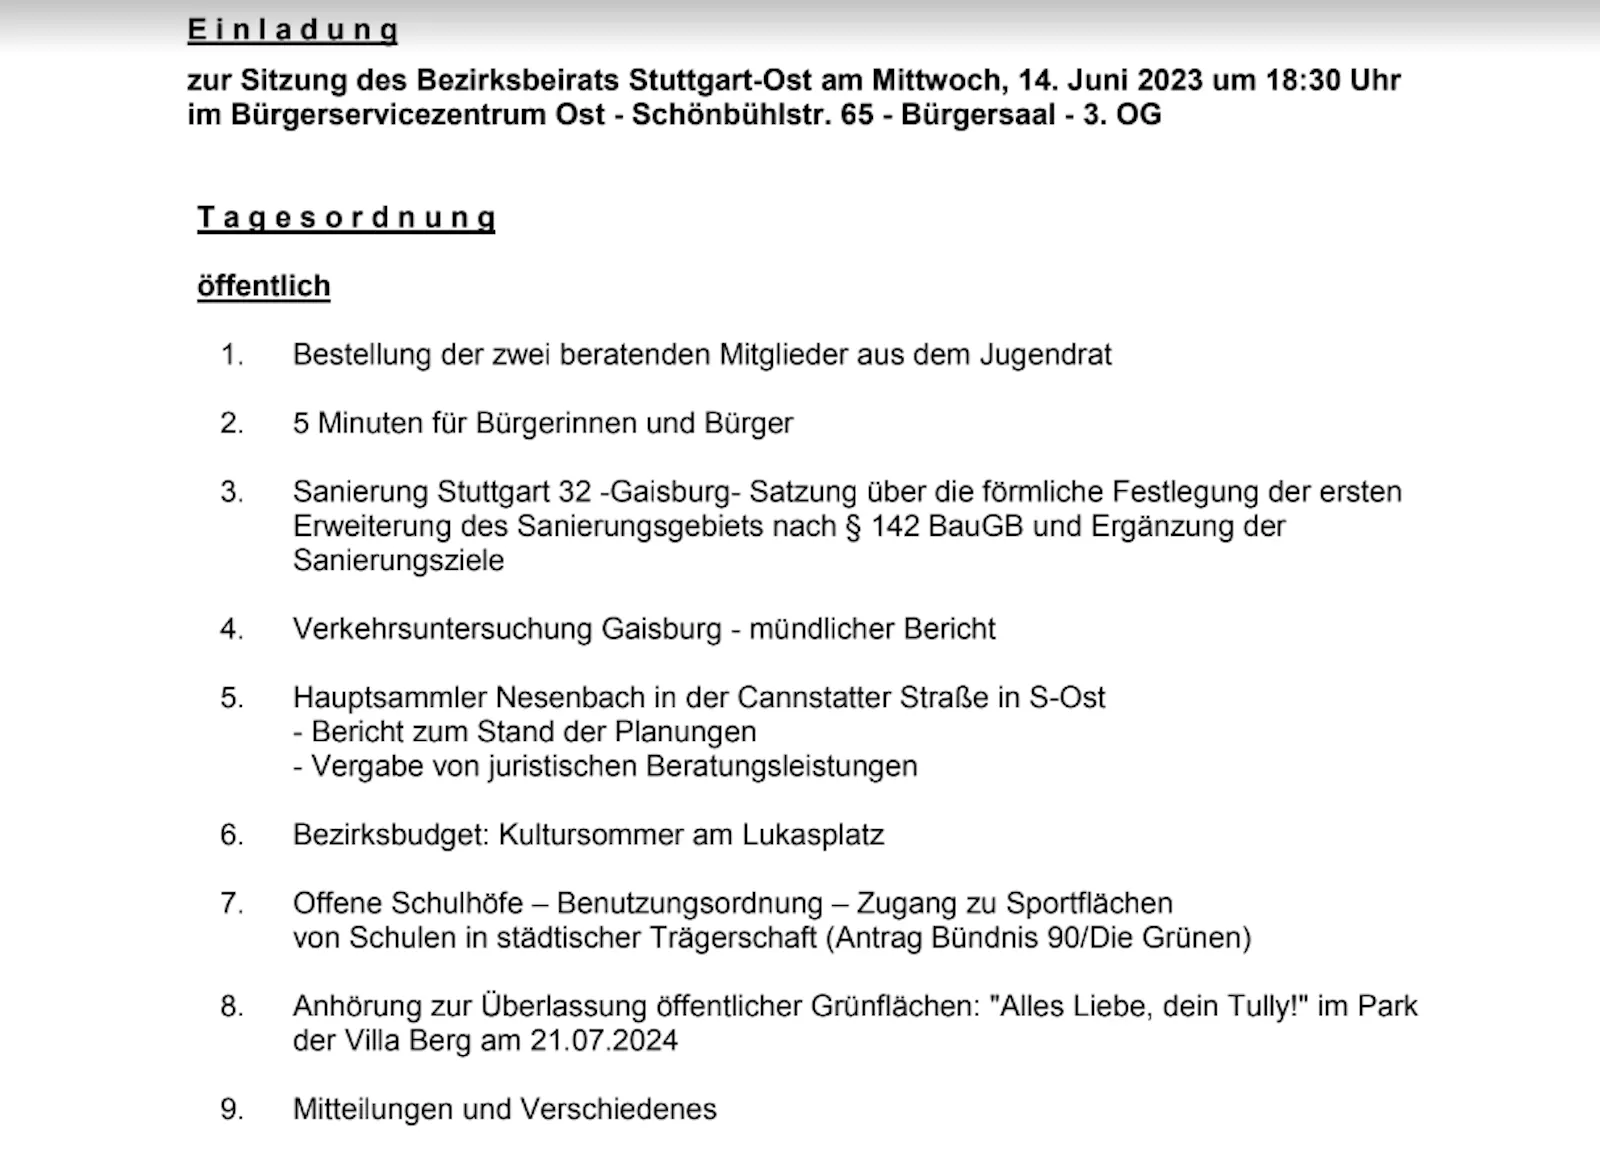 Tagesordnung der Sitzung des Bezirksbeirats Stuttgart-Ost am Mittwoch, 14. Juni